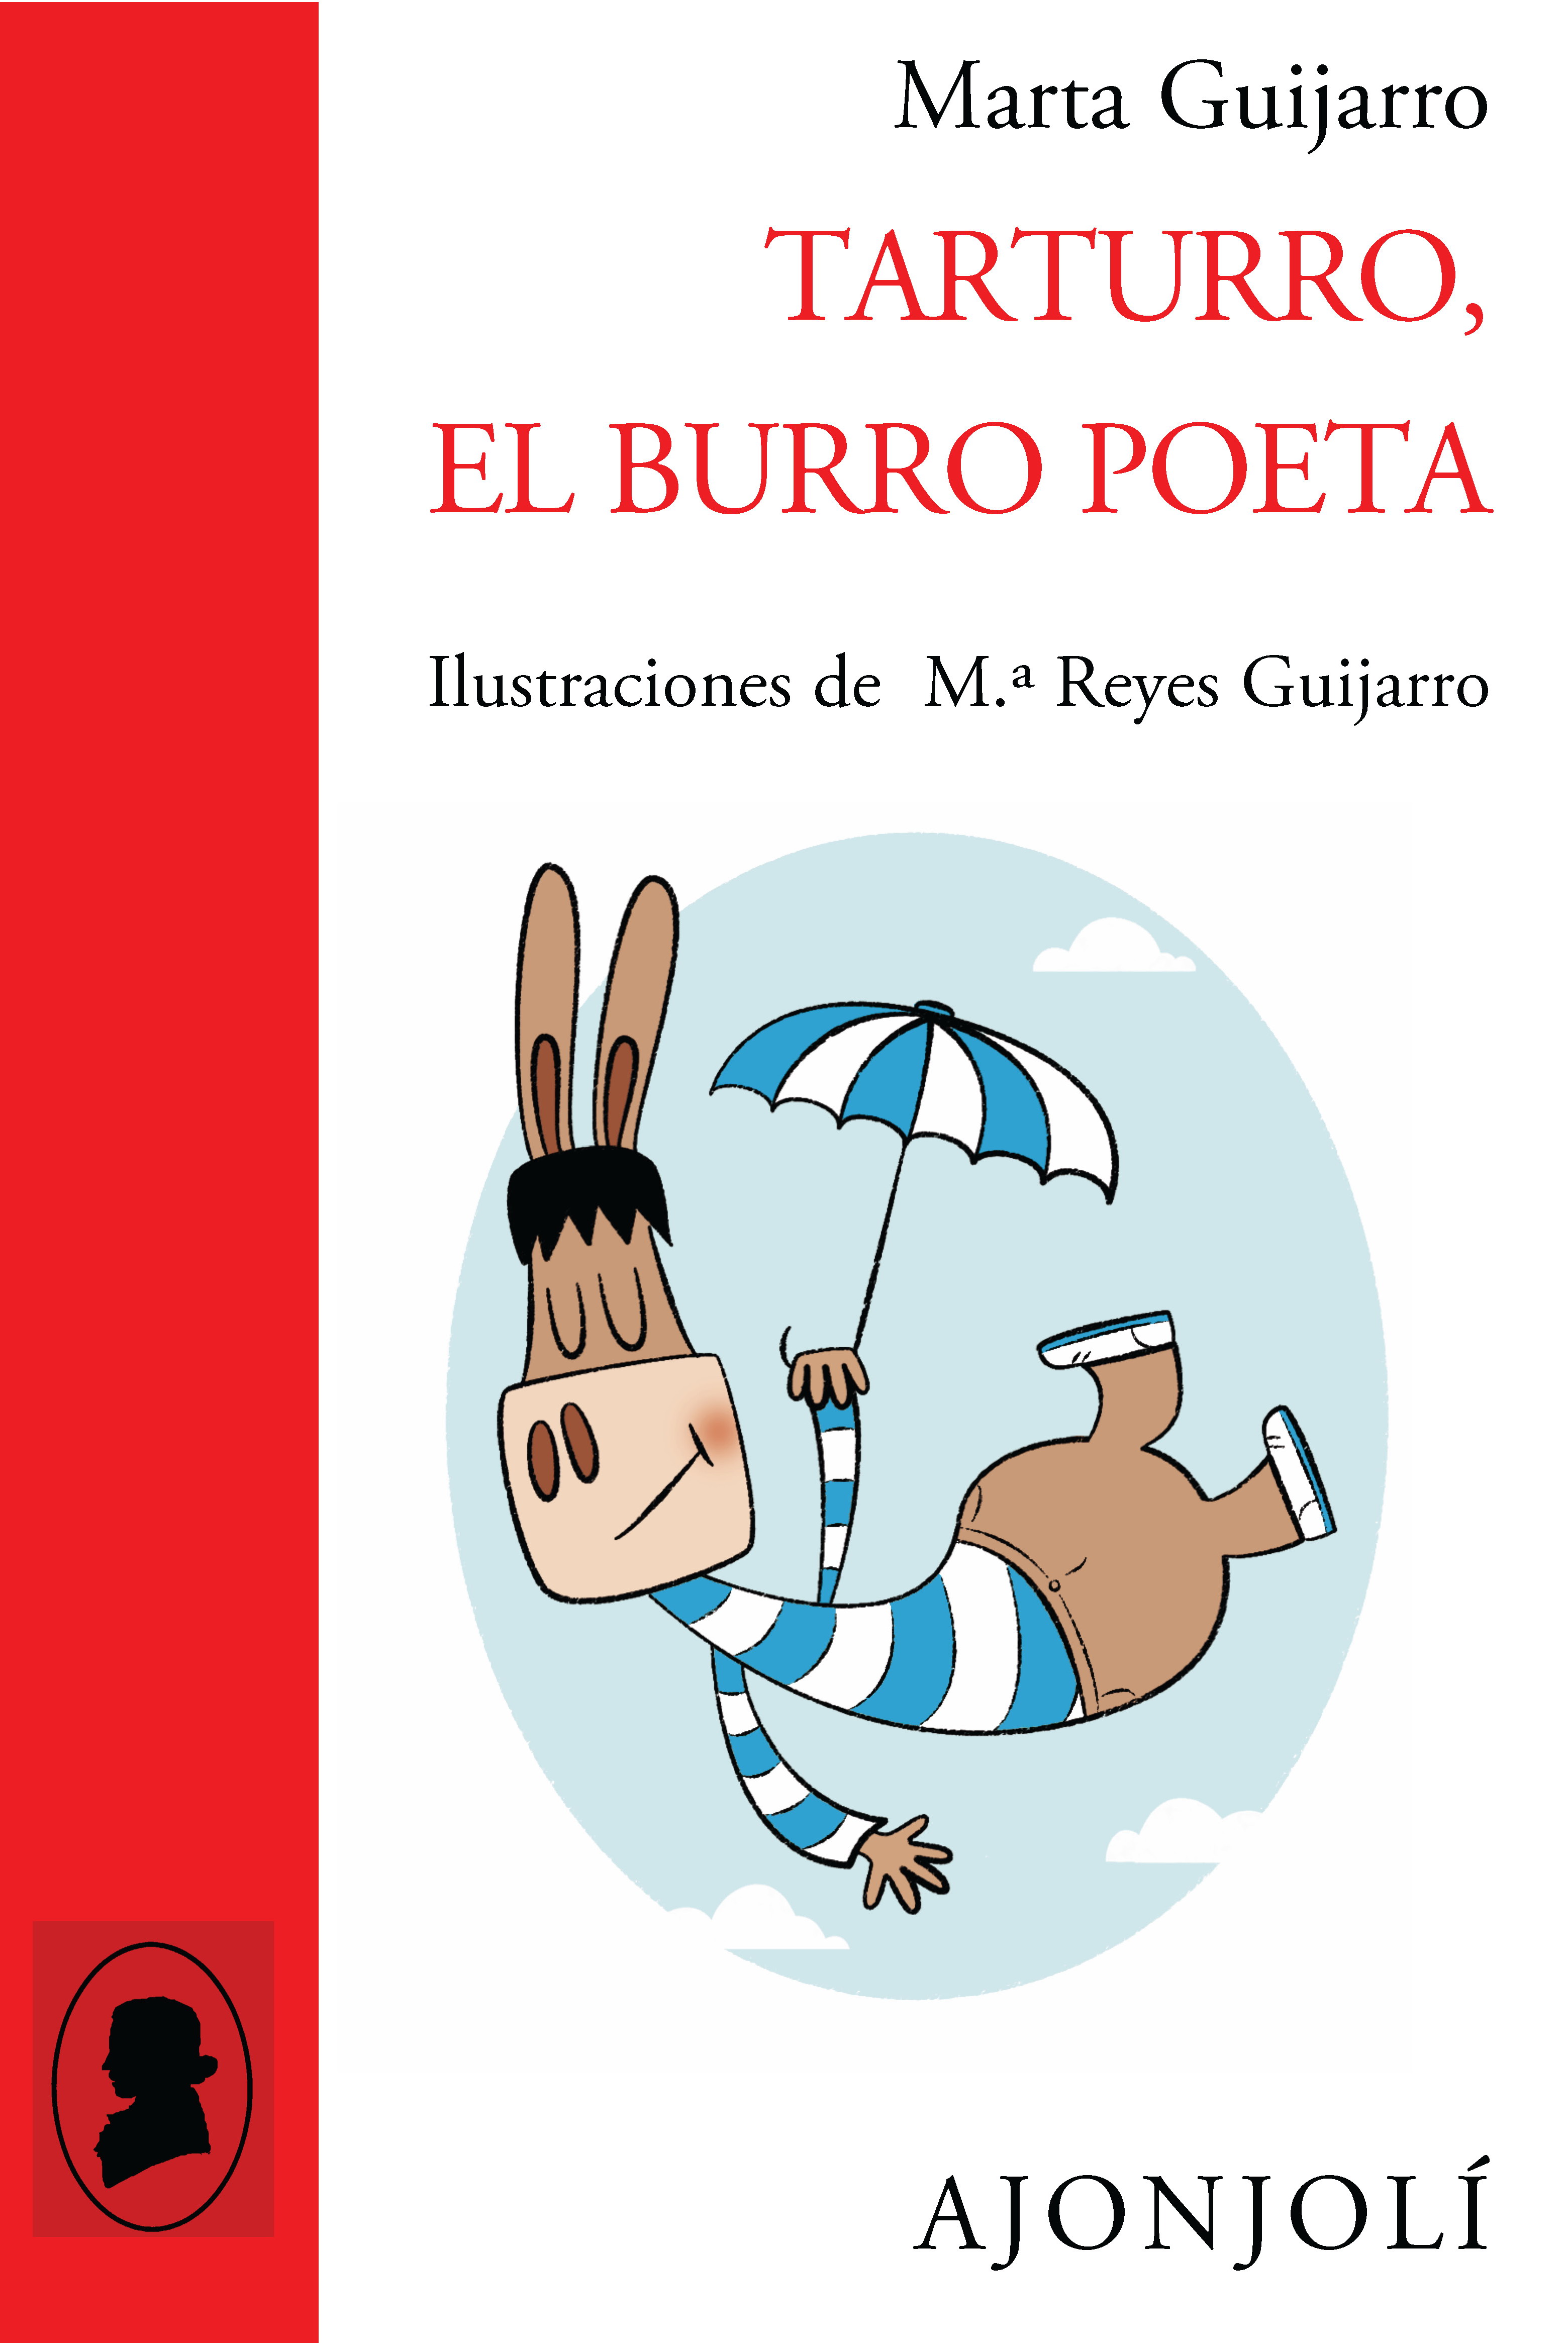 Poesía para niños con EL BURRO TARTURRO, de Marta Guijarro